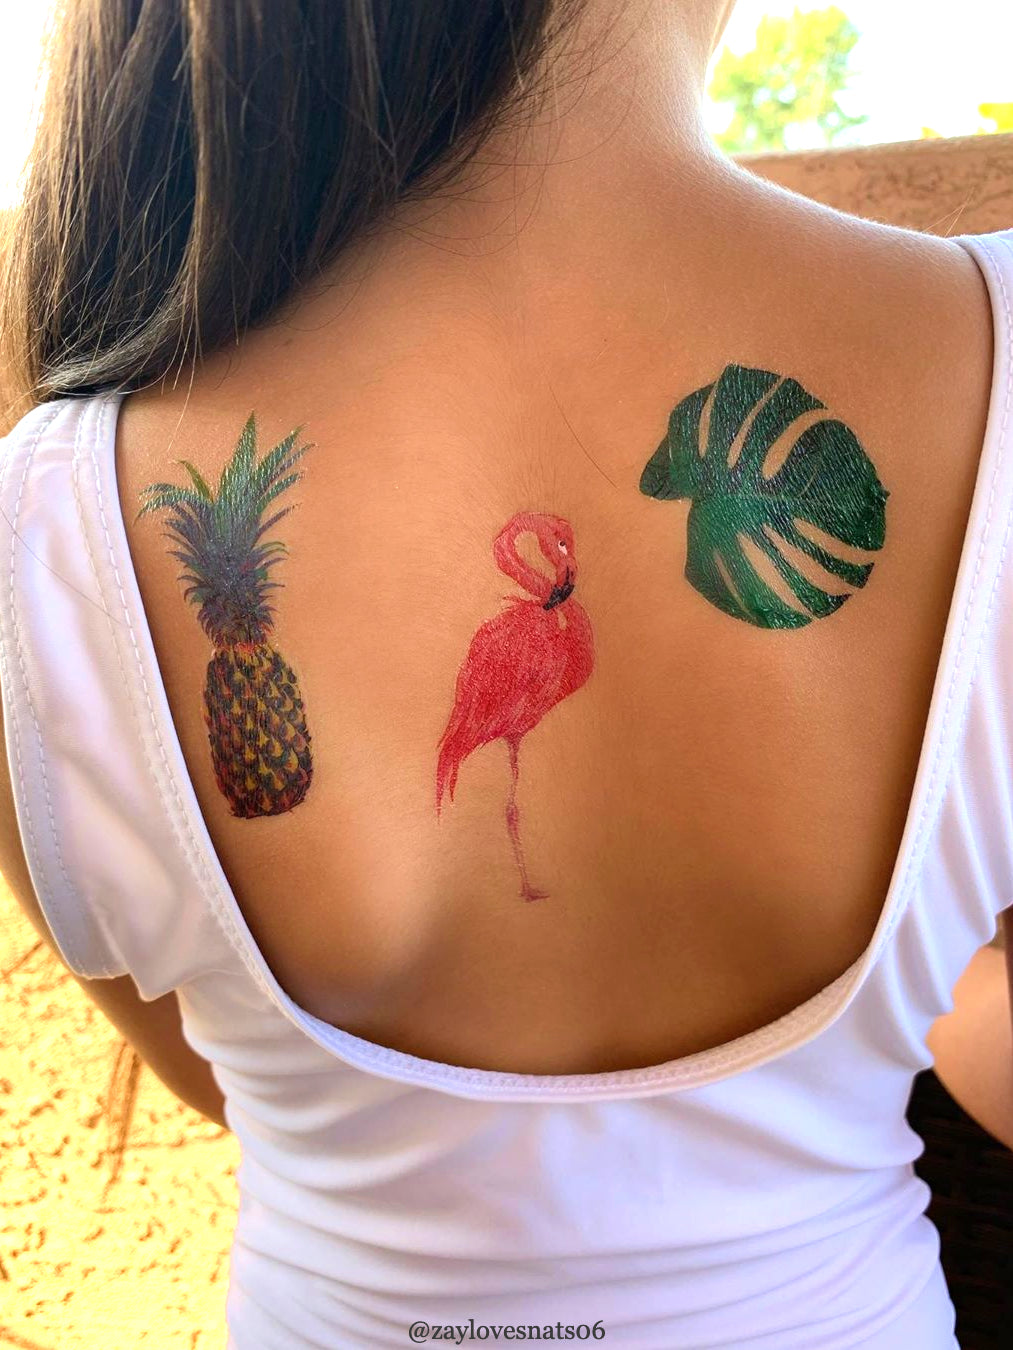 Small Flamingo Tattoo on Leg - Best Tattoo Ideas Gallery